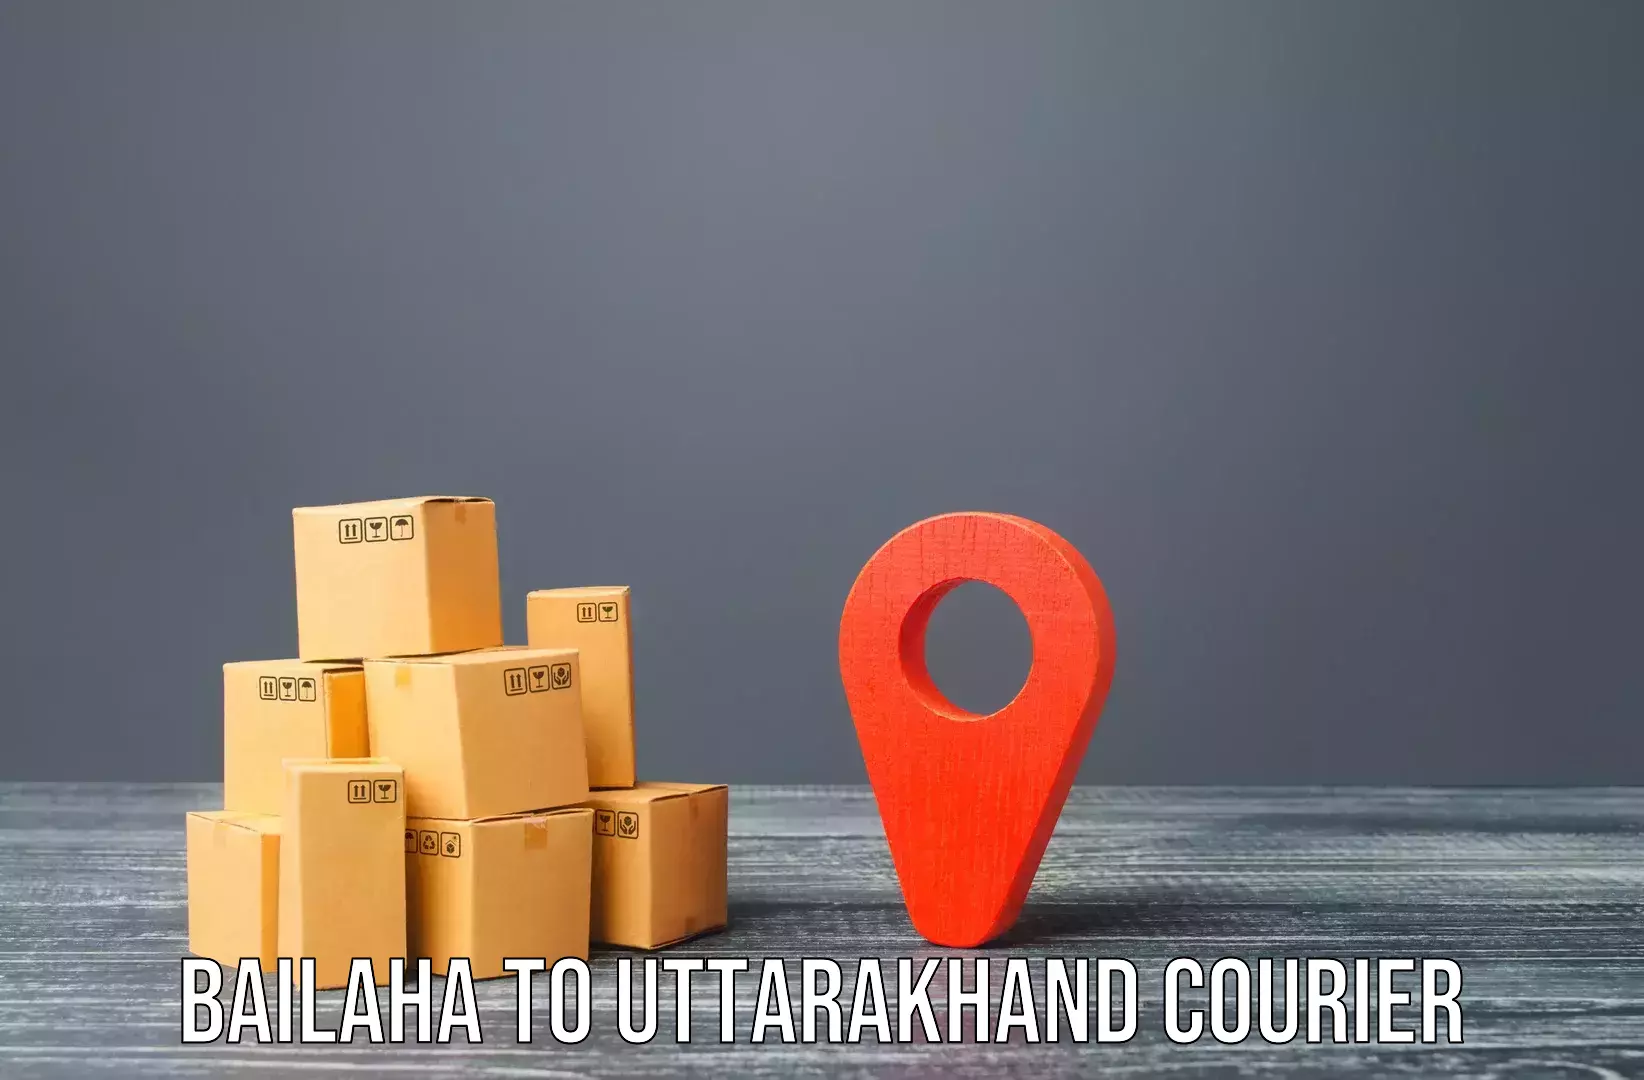 Furniture moving experts Bailaha to Uttarakhand